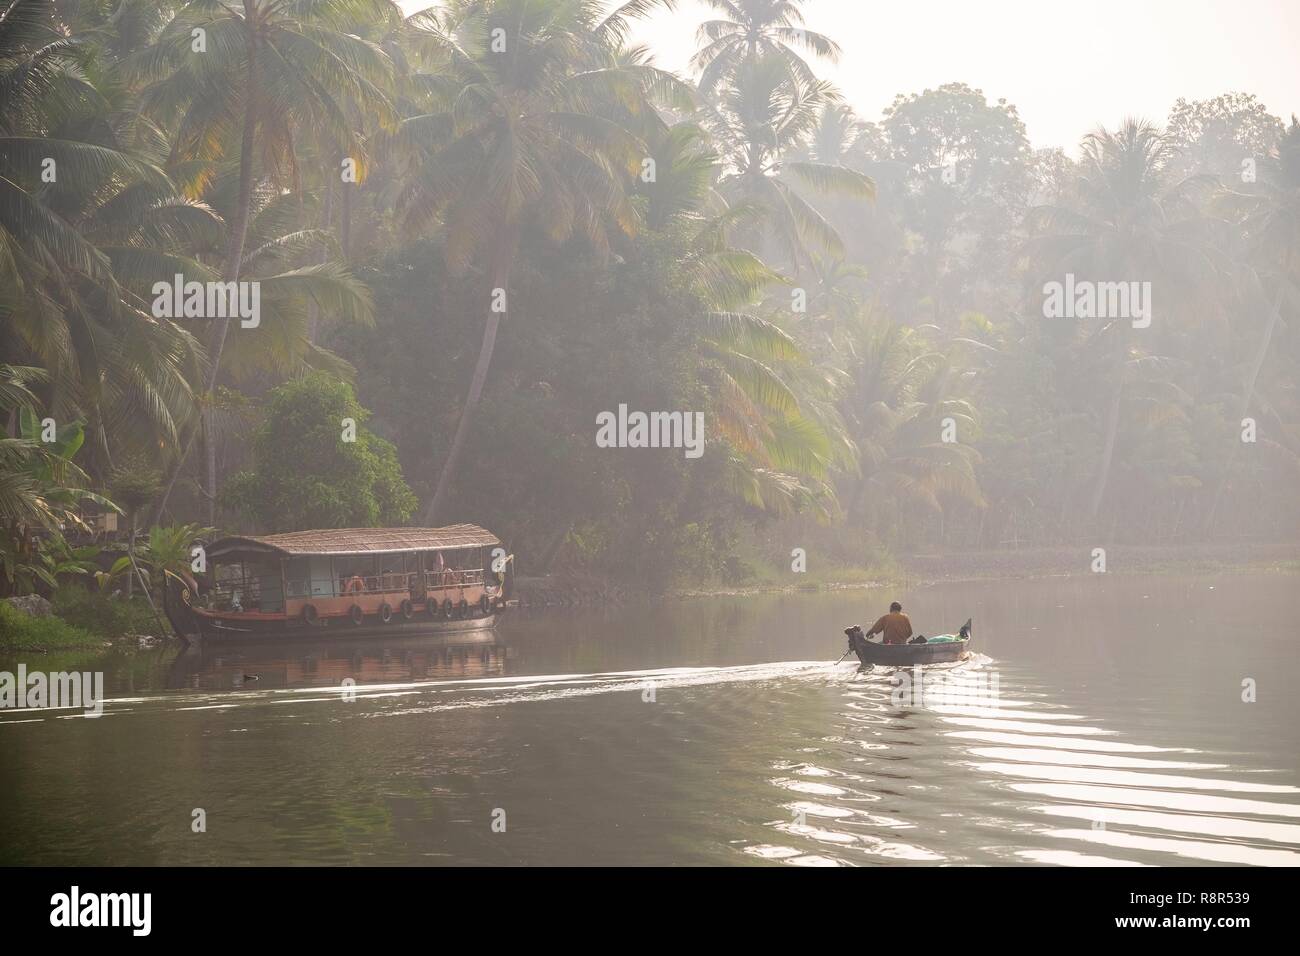 India, stato del Kerala, Kumarakom, paesino immerso nella cornice del Lago Vembanad, kettuvallam (casa tradizionale barca) e pescatore per le lagune (lagune e canali di reti) Foto Stock